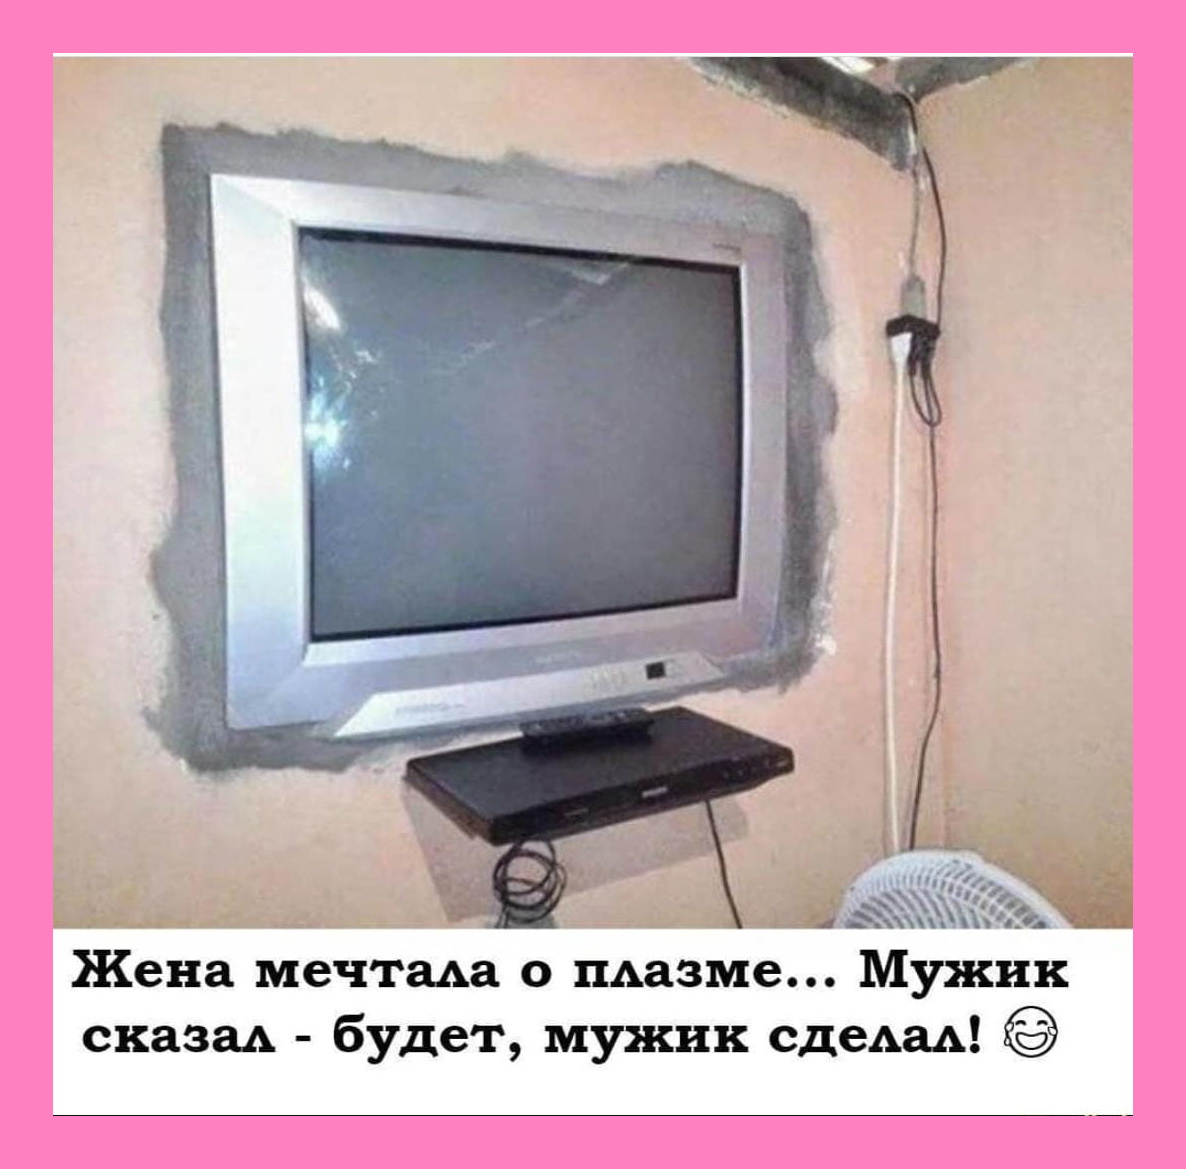 Сделай чтобы телевизор выключился. Телевизор на стене. Старый телевизор на стене. Кинескопный телевизор в стене. Плоский телевизор на стену.